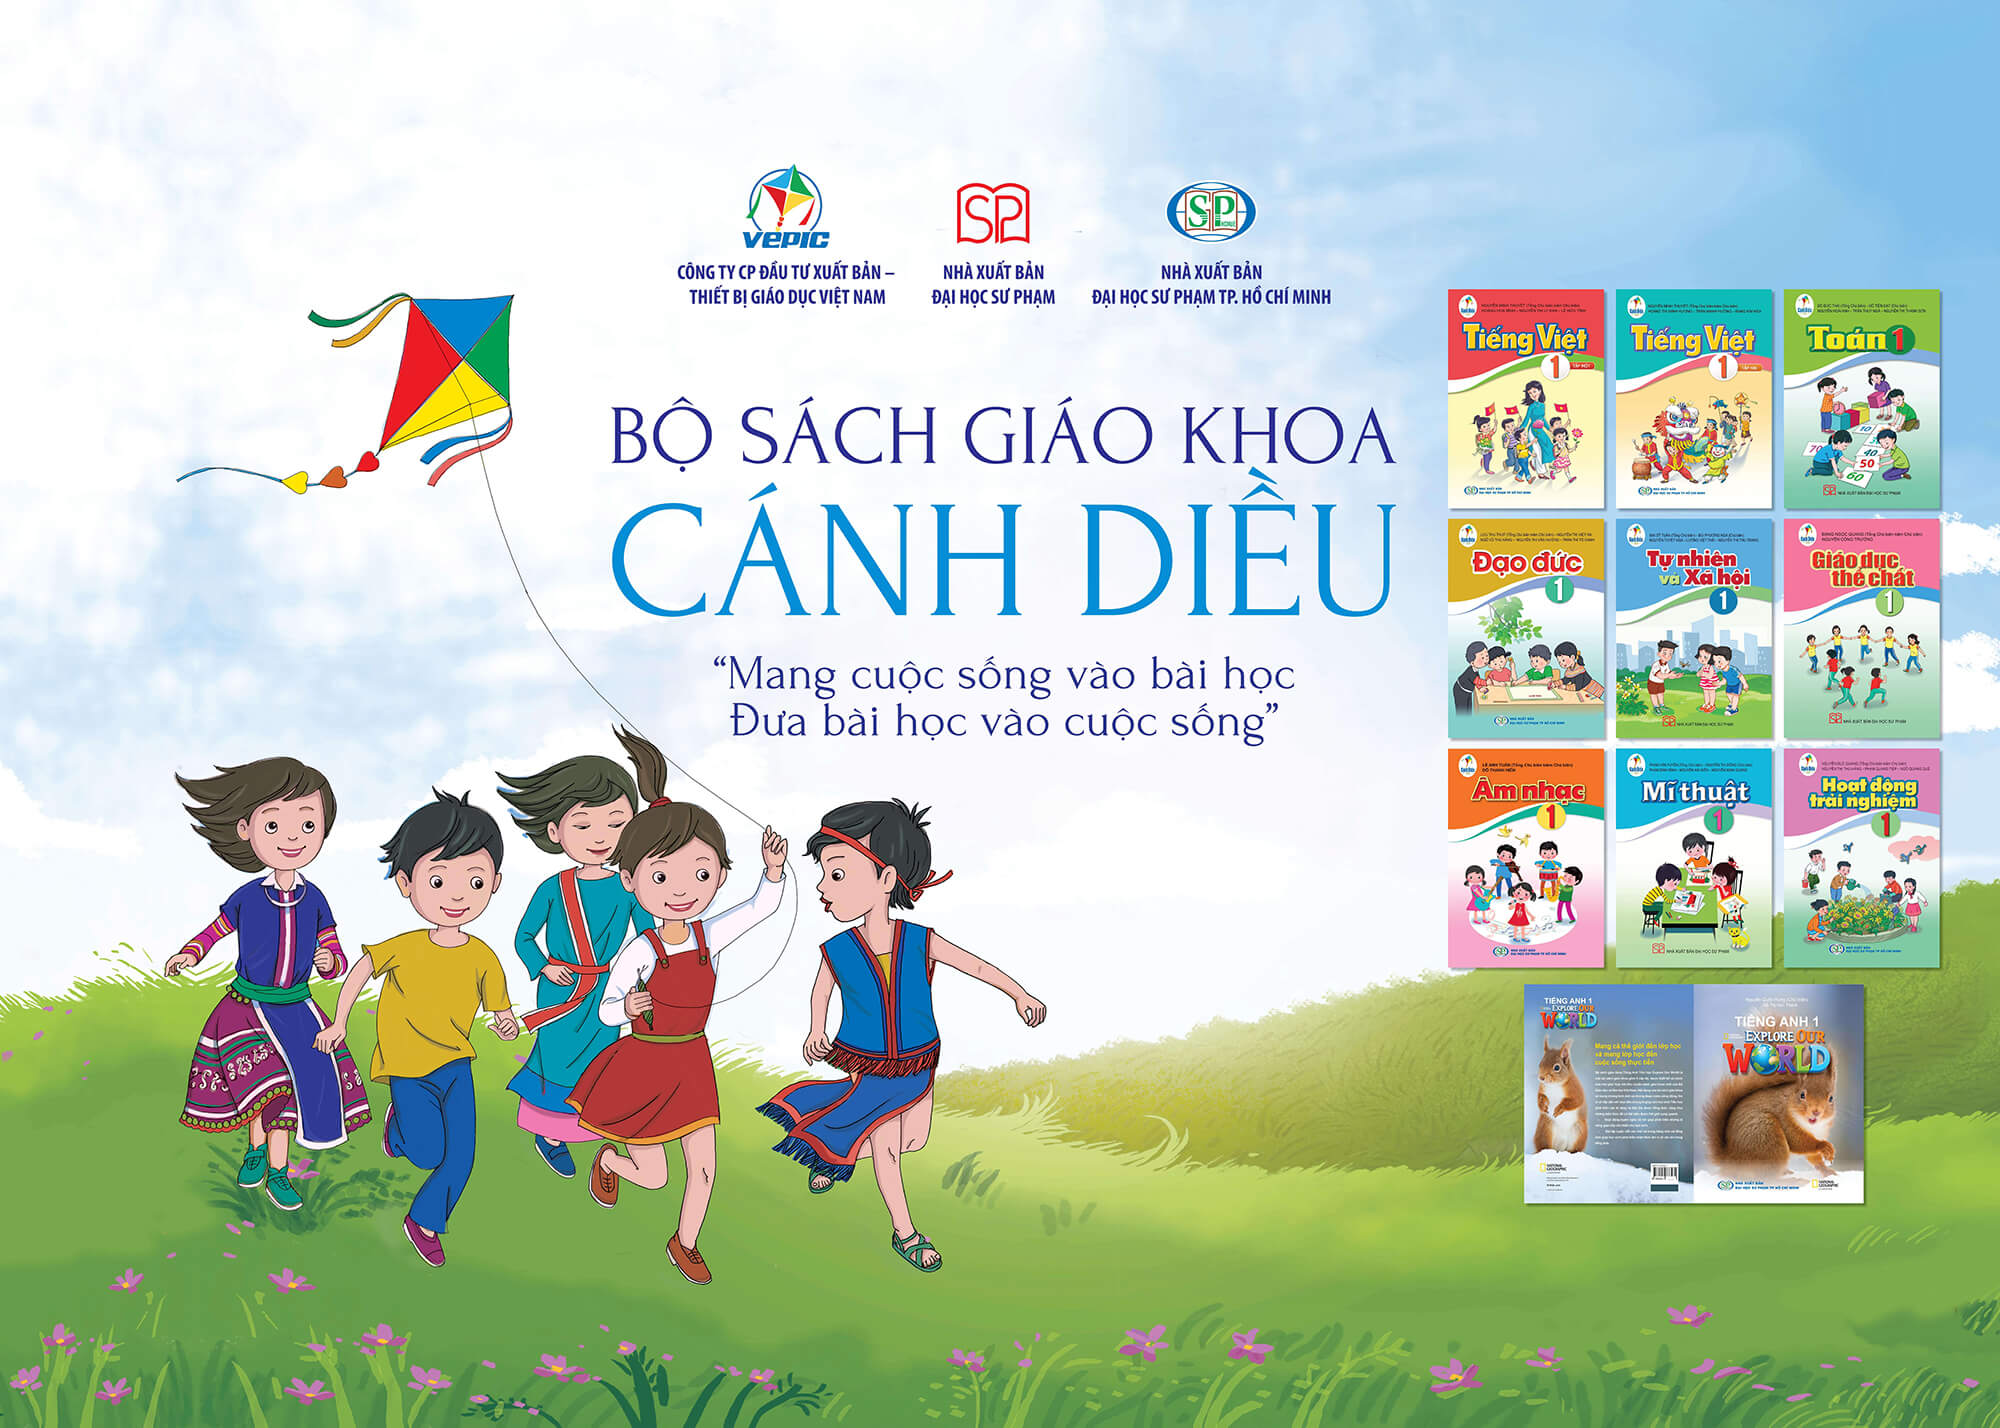 Cả 9/9 trường có cấp tiểu học ở huyện Ba Chẽ đều lựa chọn bộ sách Cánh Diều.